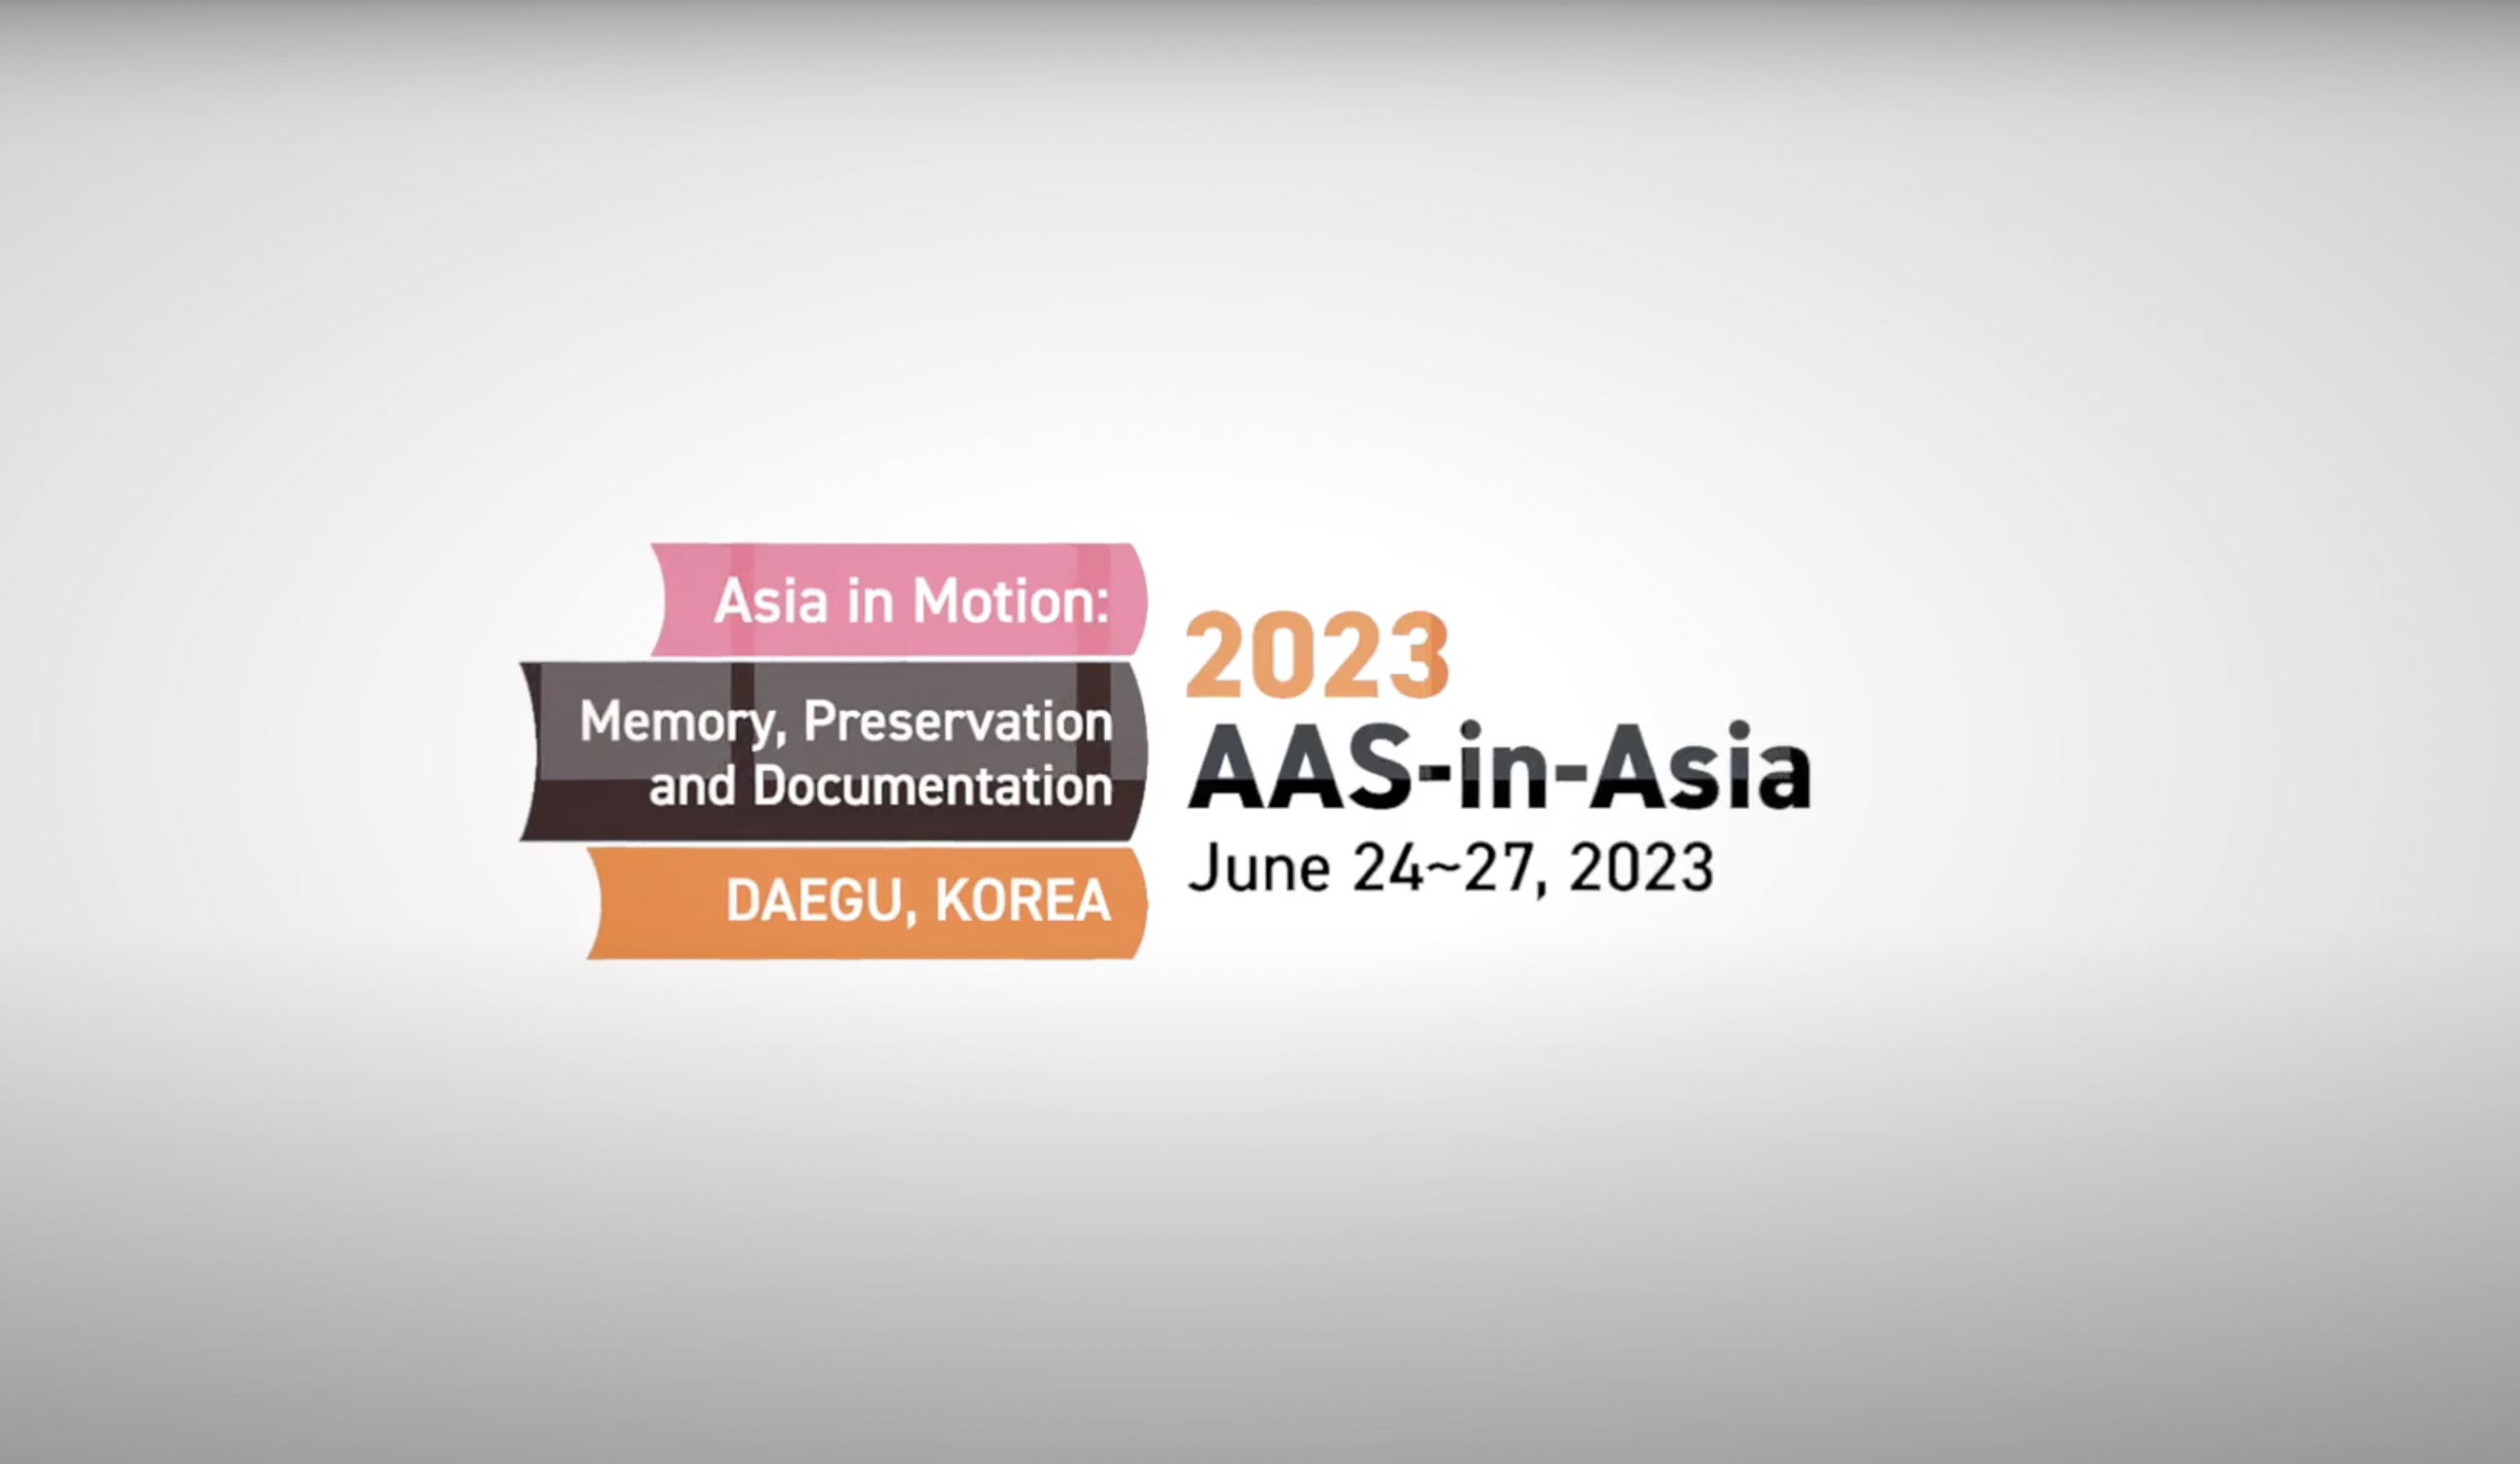 2023 AAS-in-Asia in Daegu, Korea